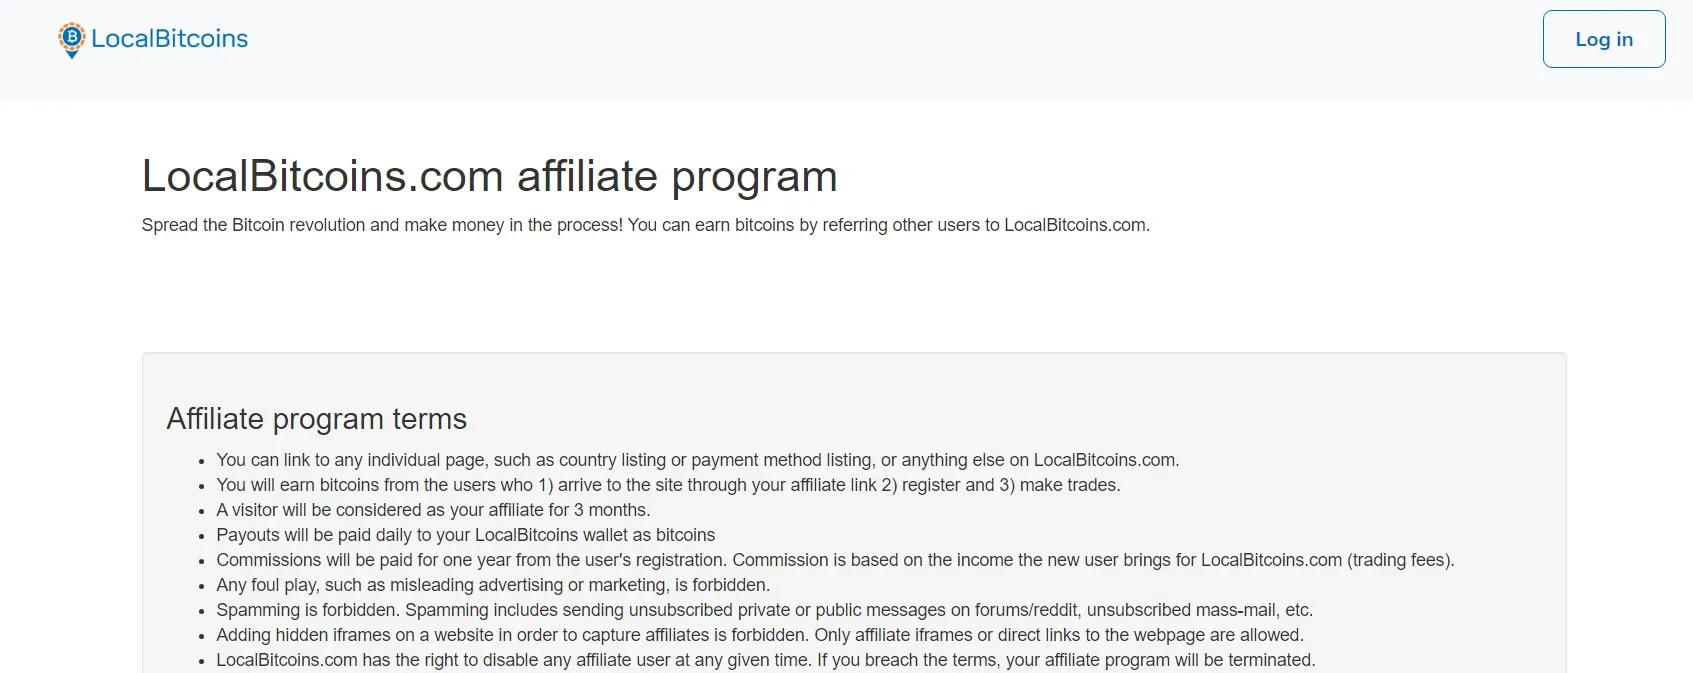 LocalBitcoins Affiliate Program 